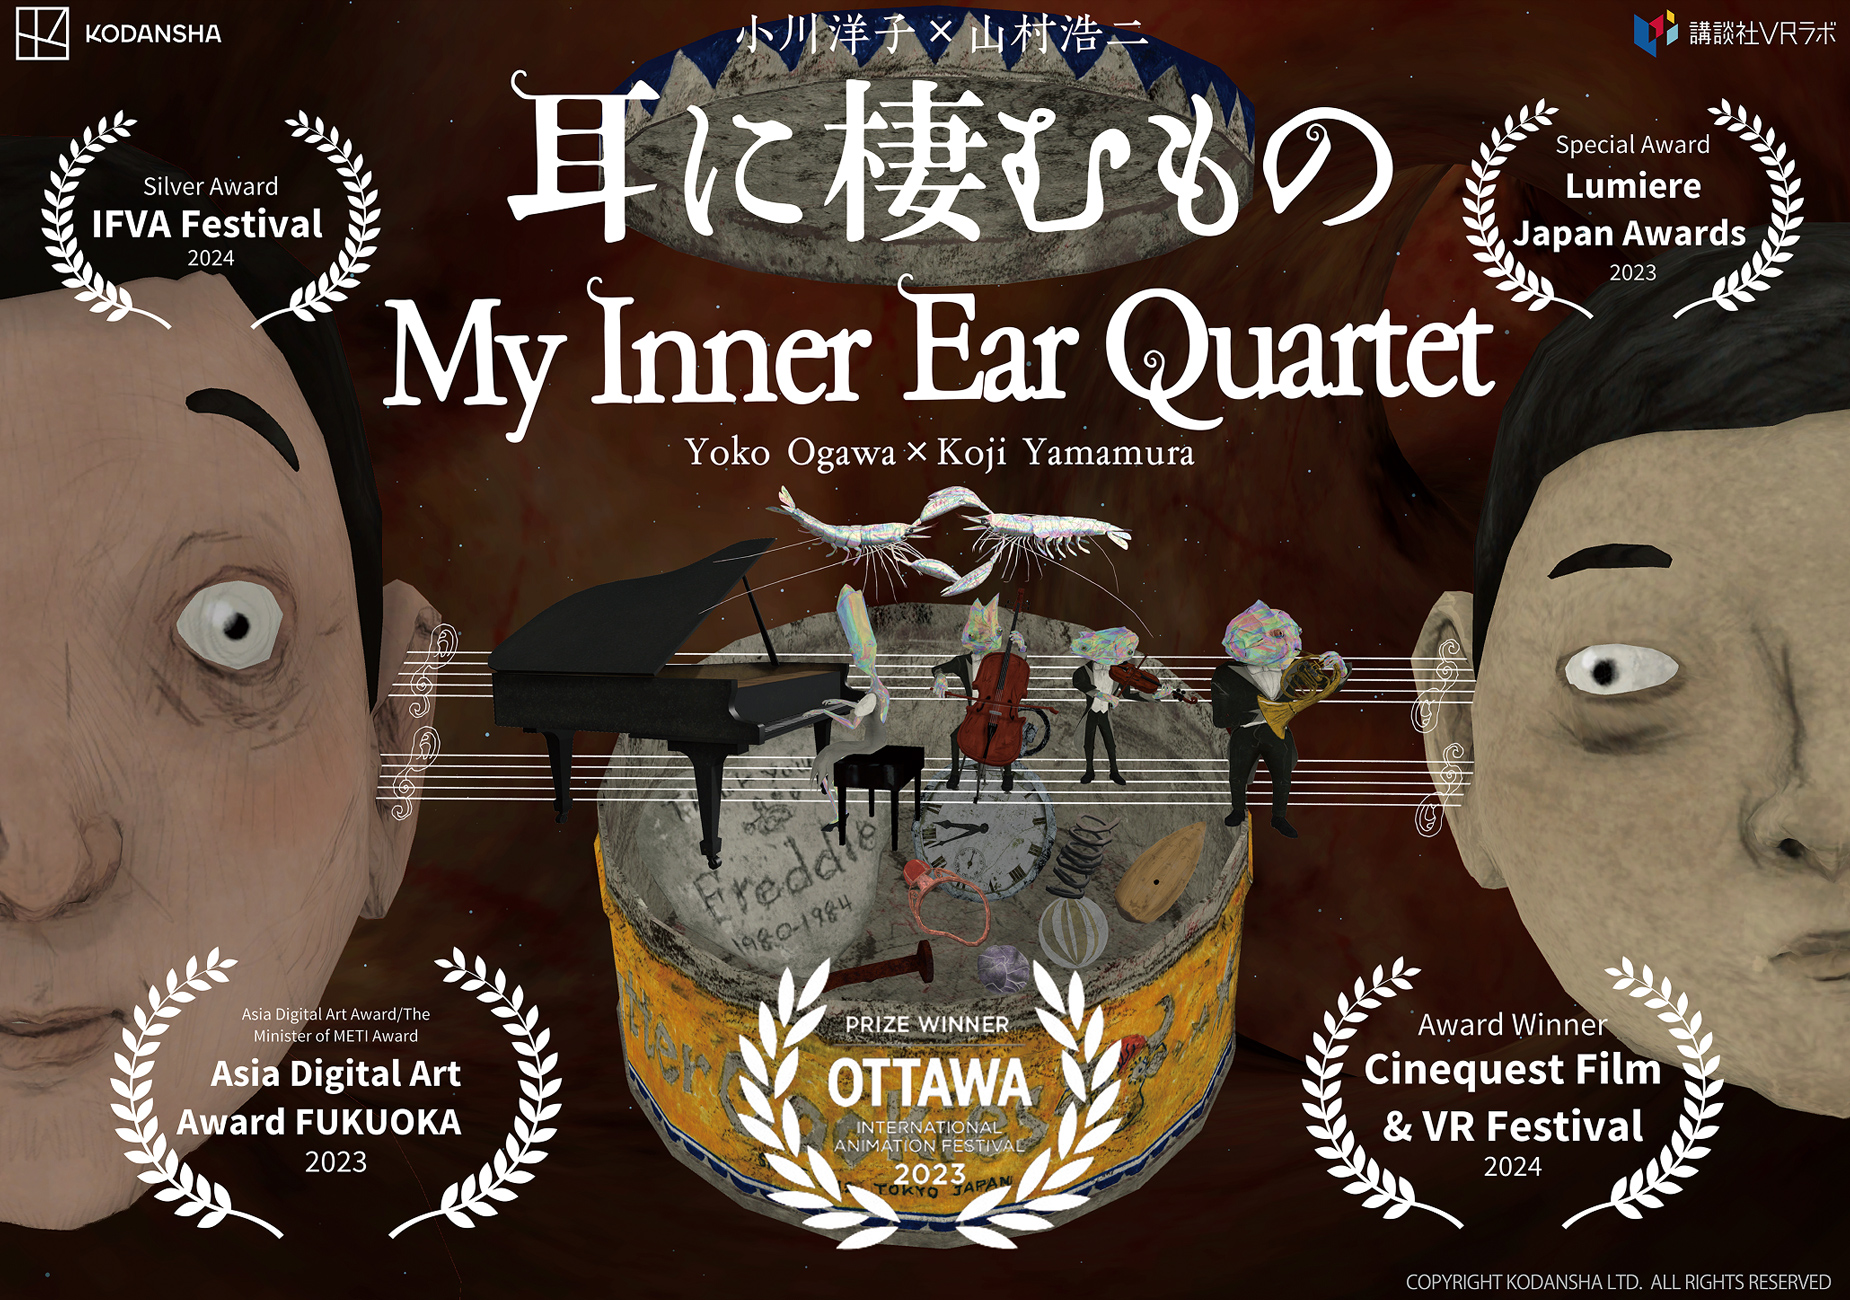 My Inner Ear Quartet